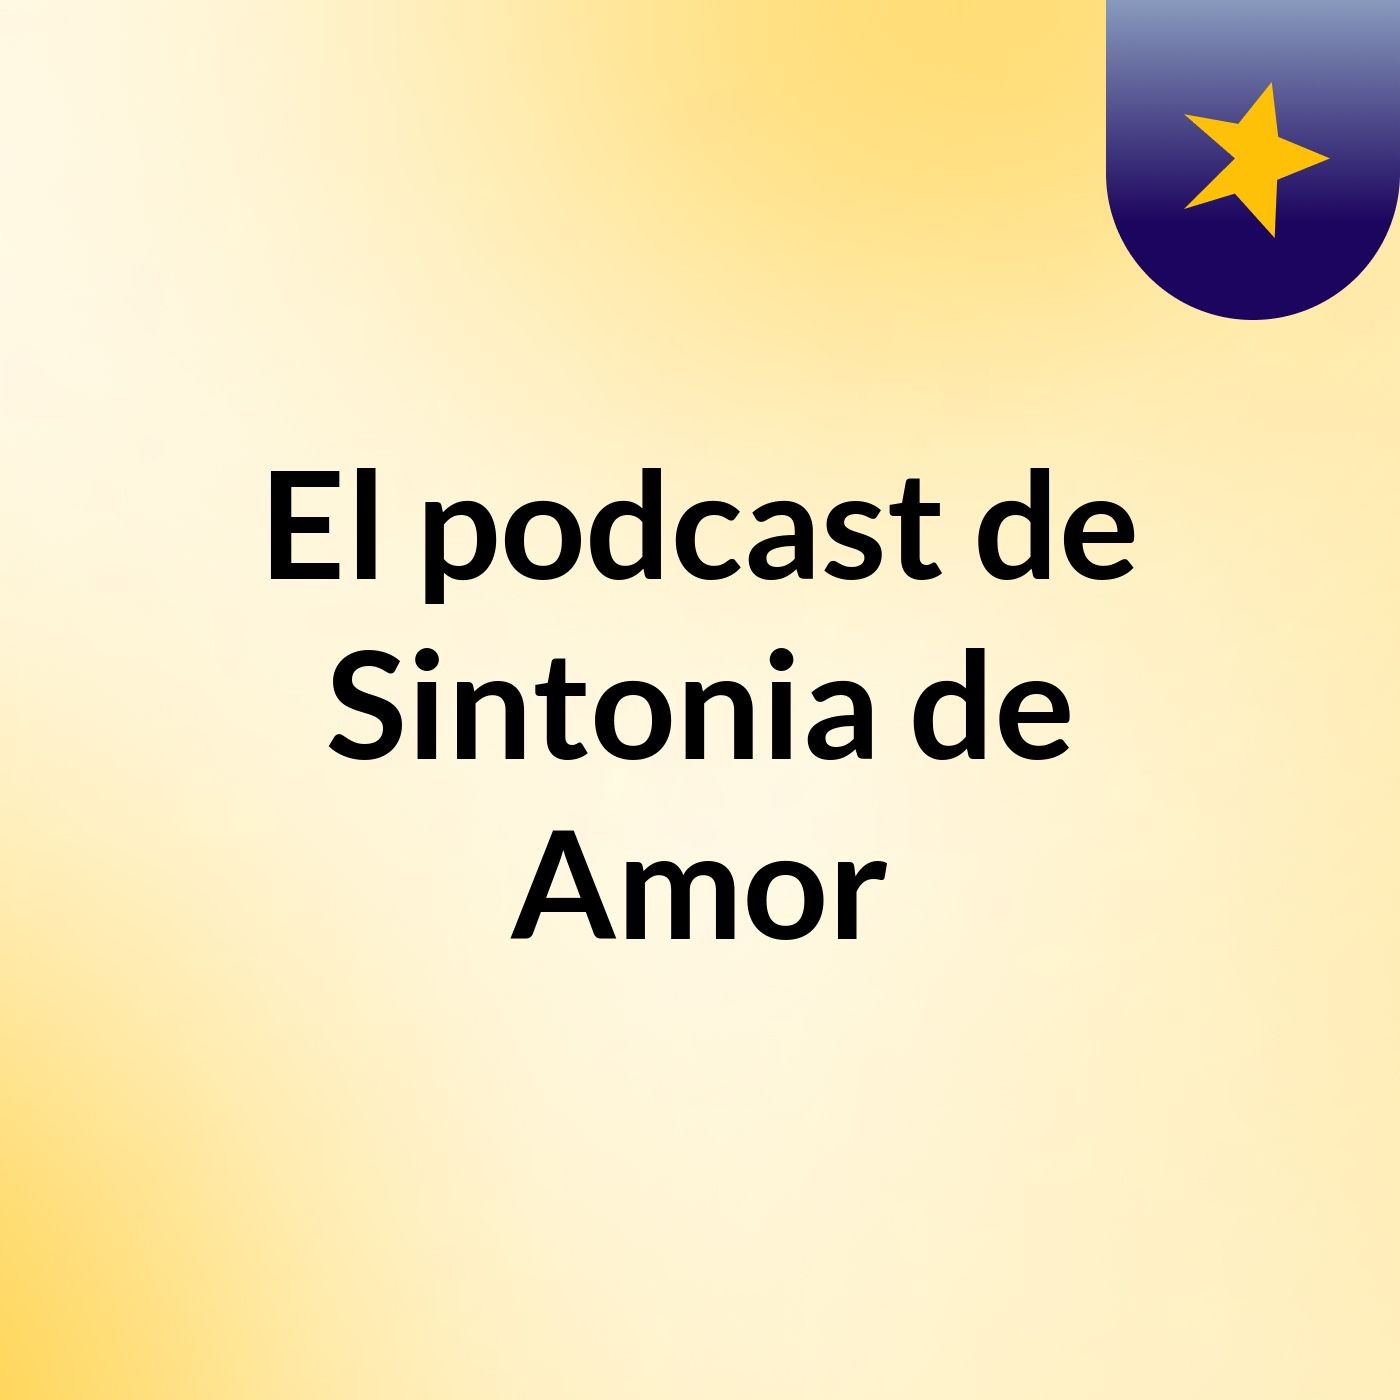 Episodio 2 - El podcast de Sintonia de Amor